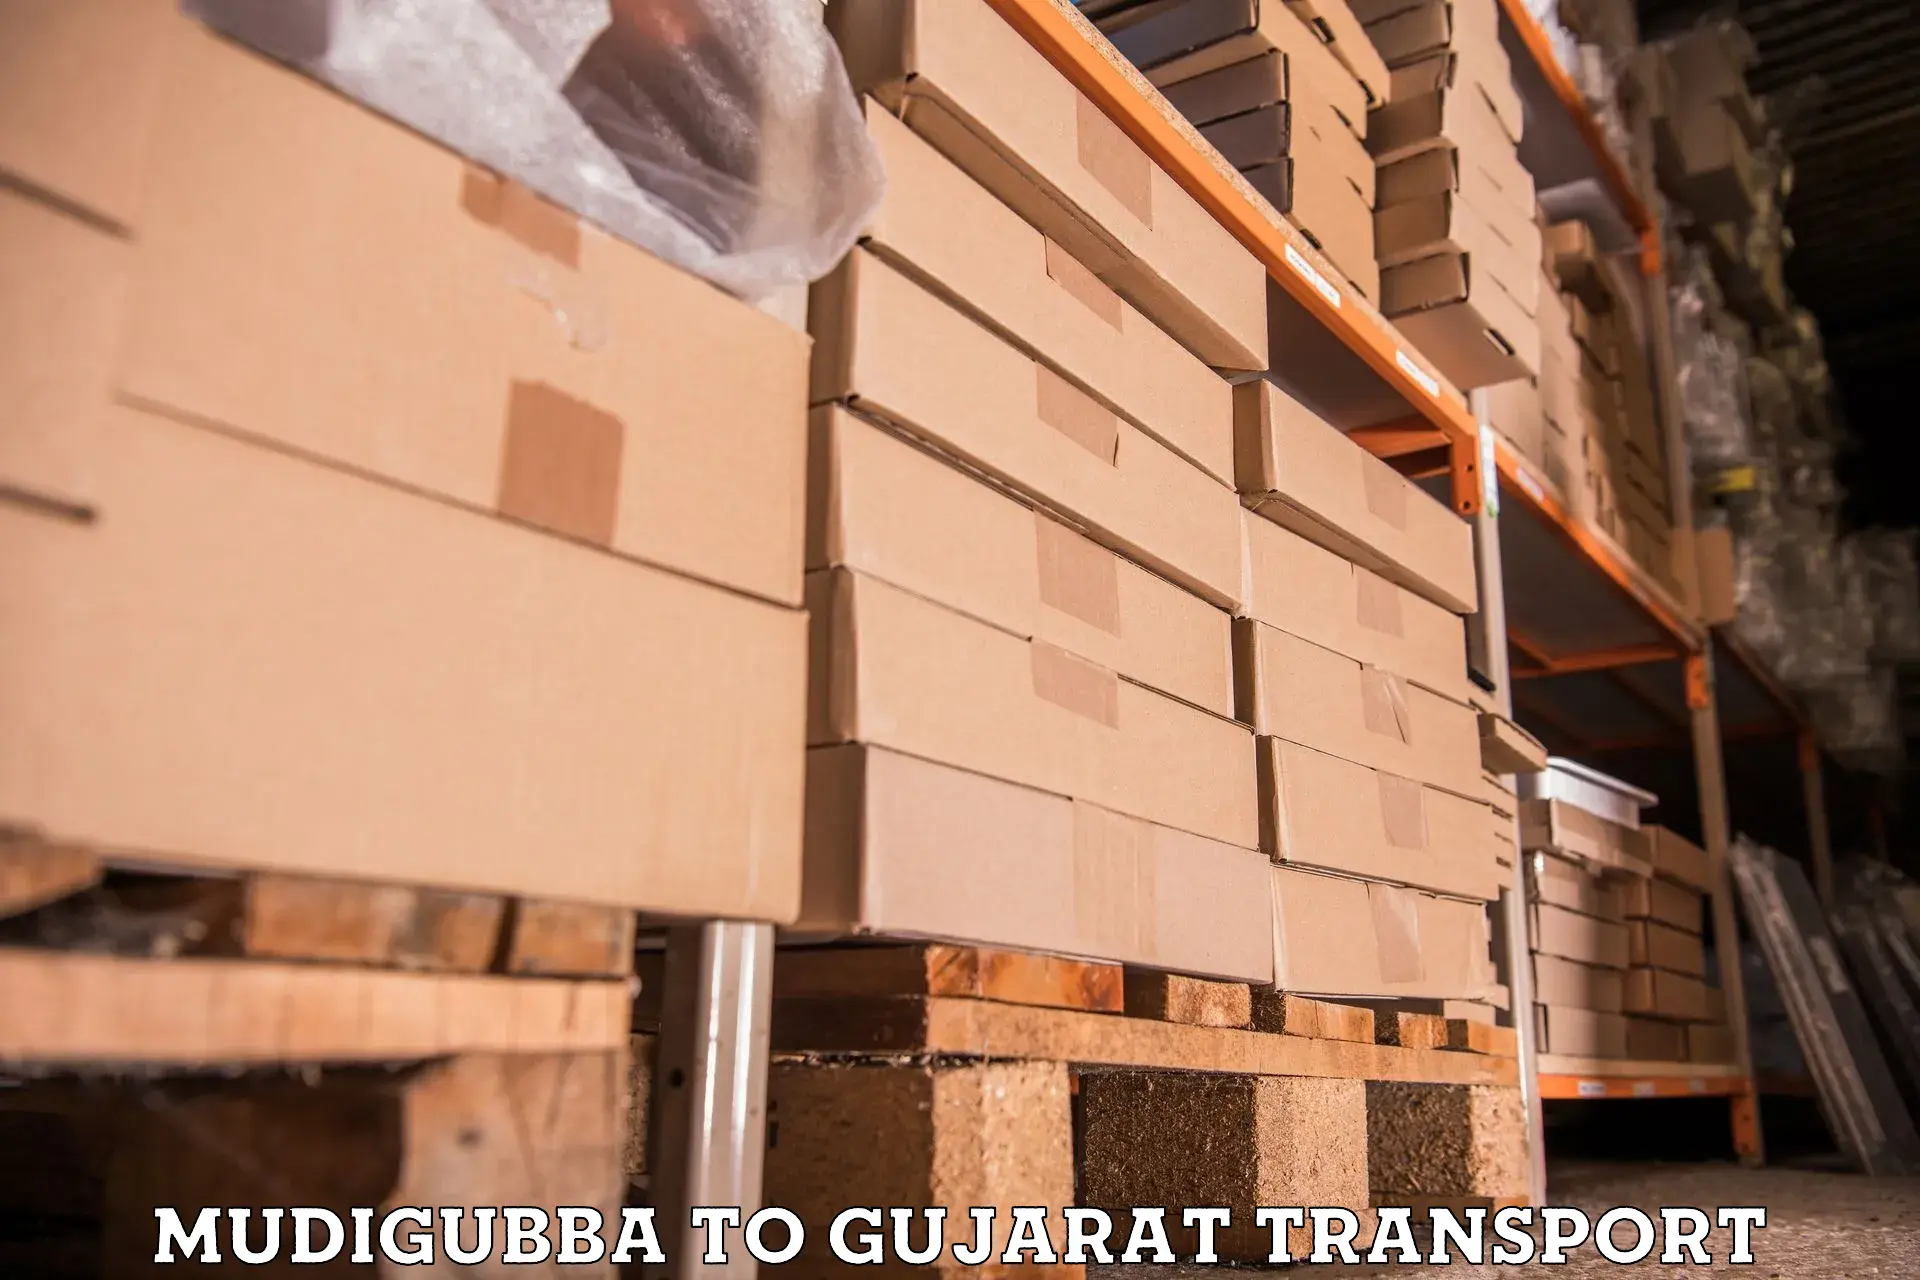 Transport in sharing Mudigubba to Gujarat